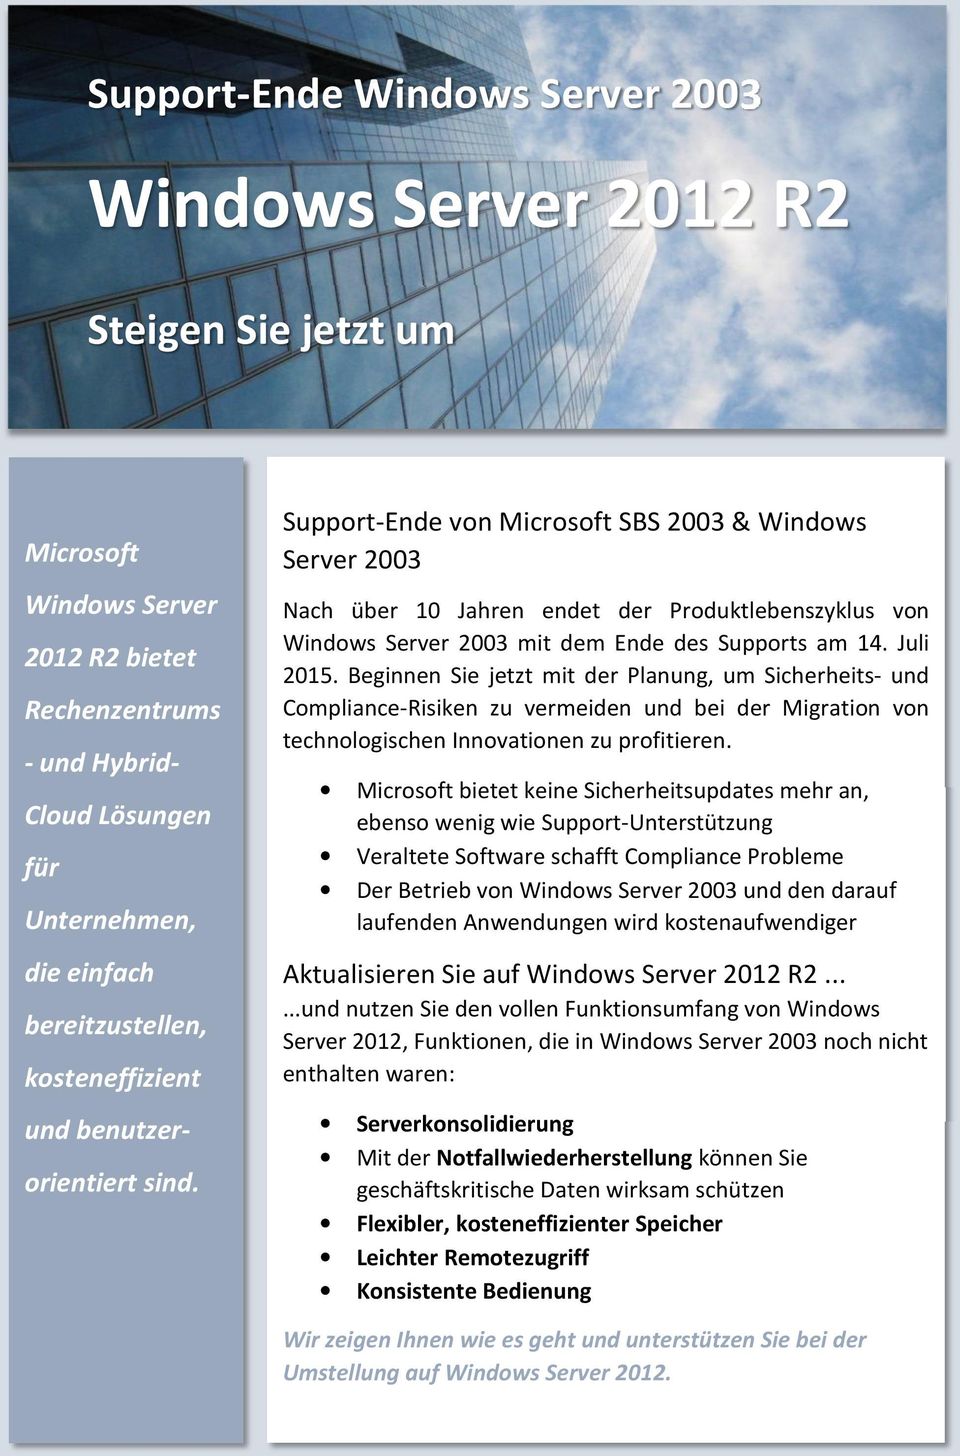 Support-Ende von Microsoft SBS 2003 & Windows Server 2003 Nach über 10 Jahren endet der Produktlebenszyklus von Windows Server 2003 mit dem Ende des Supports am 14. Juli 2015.